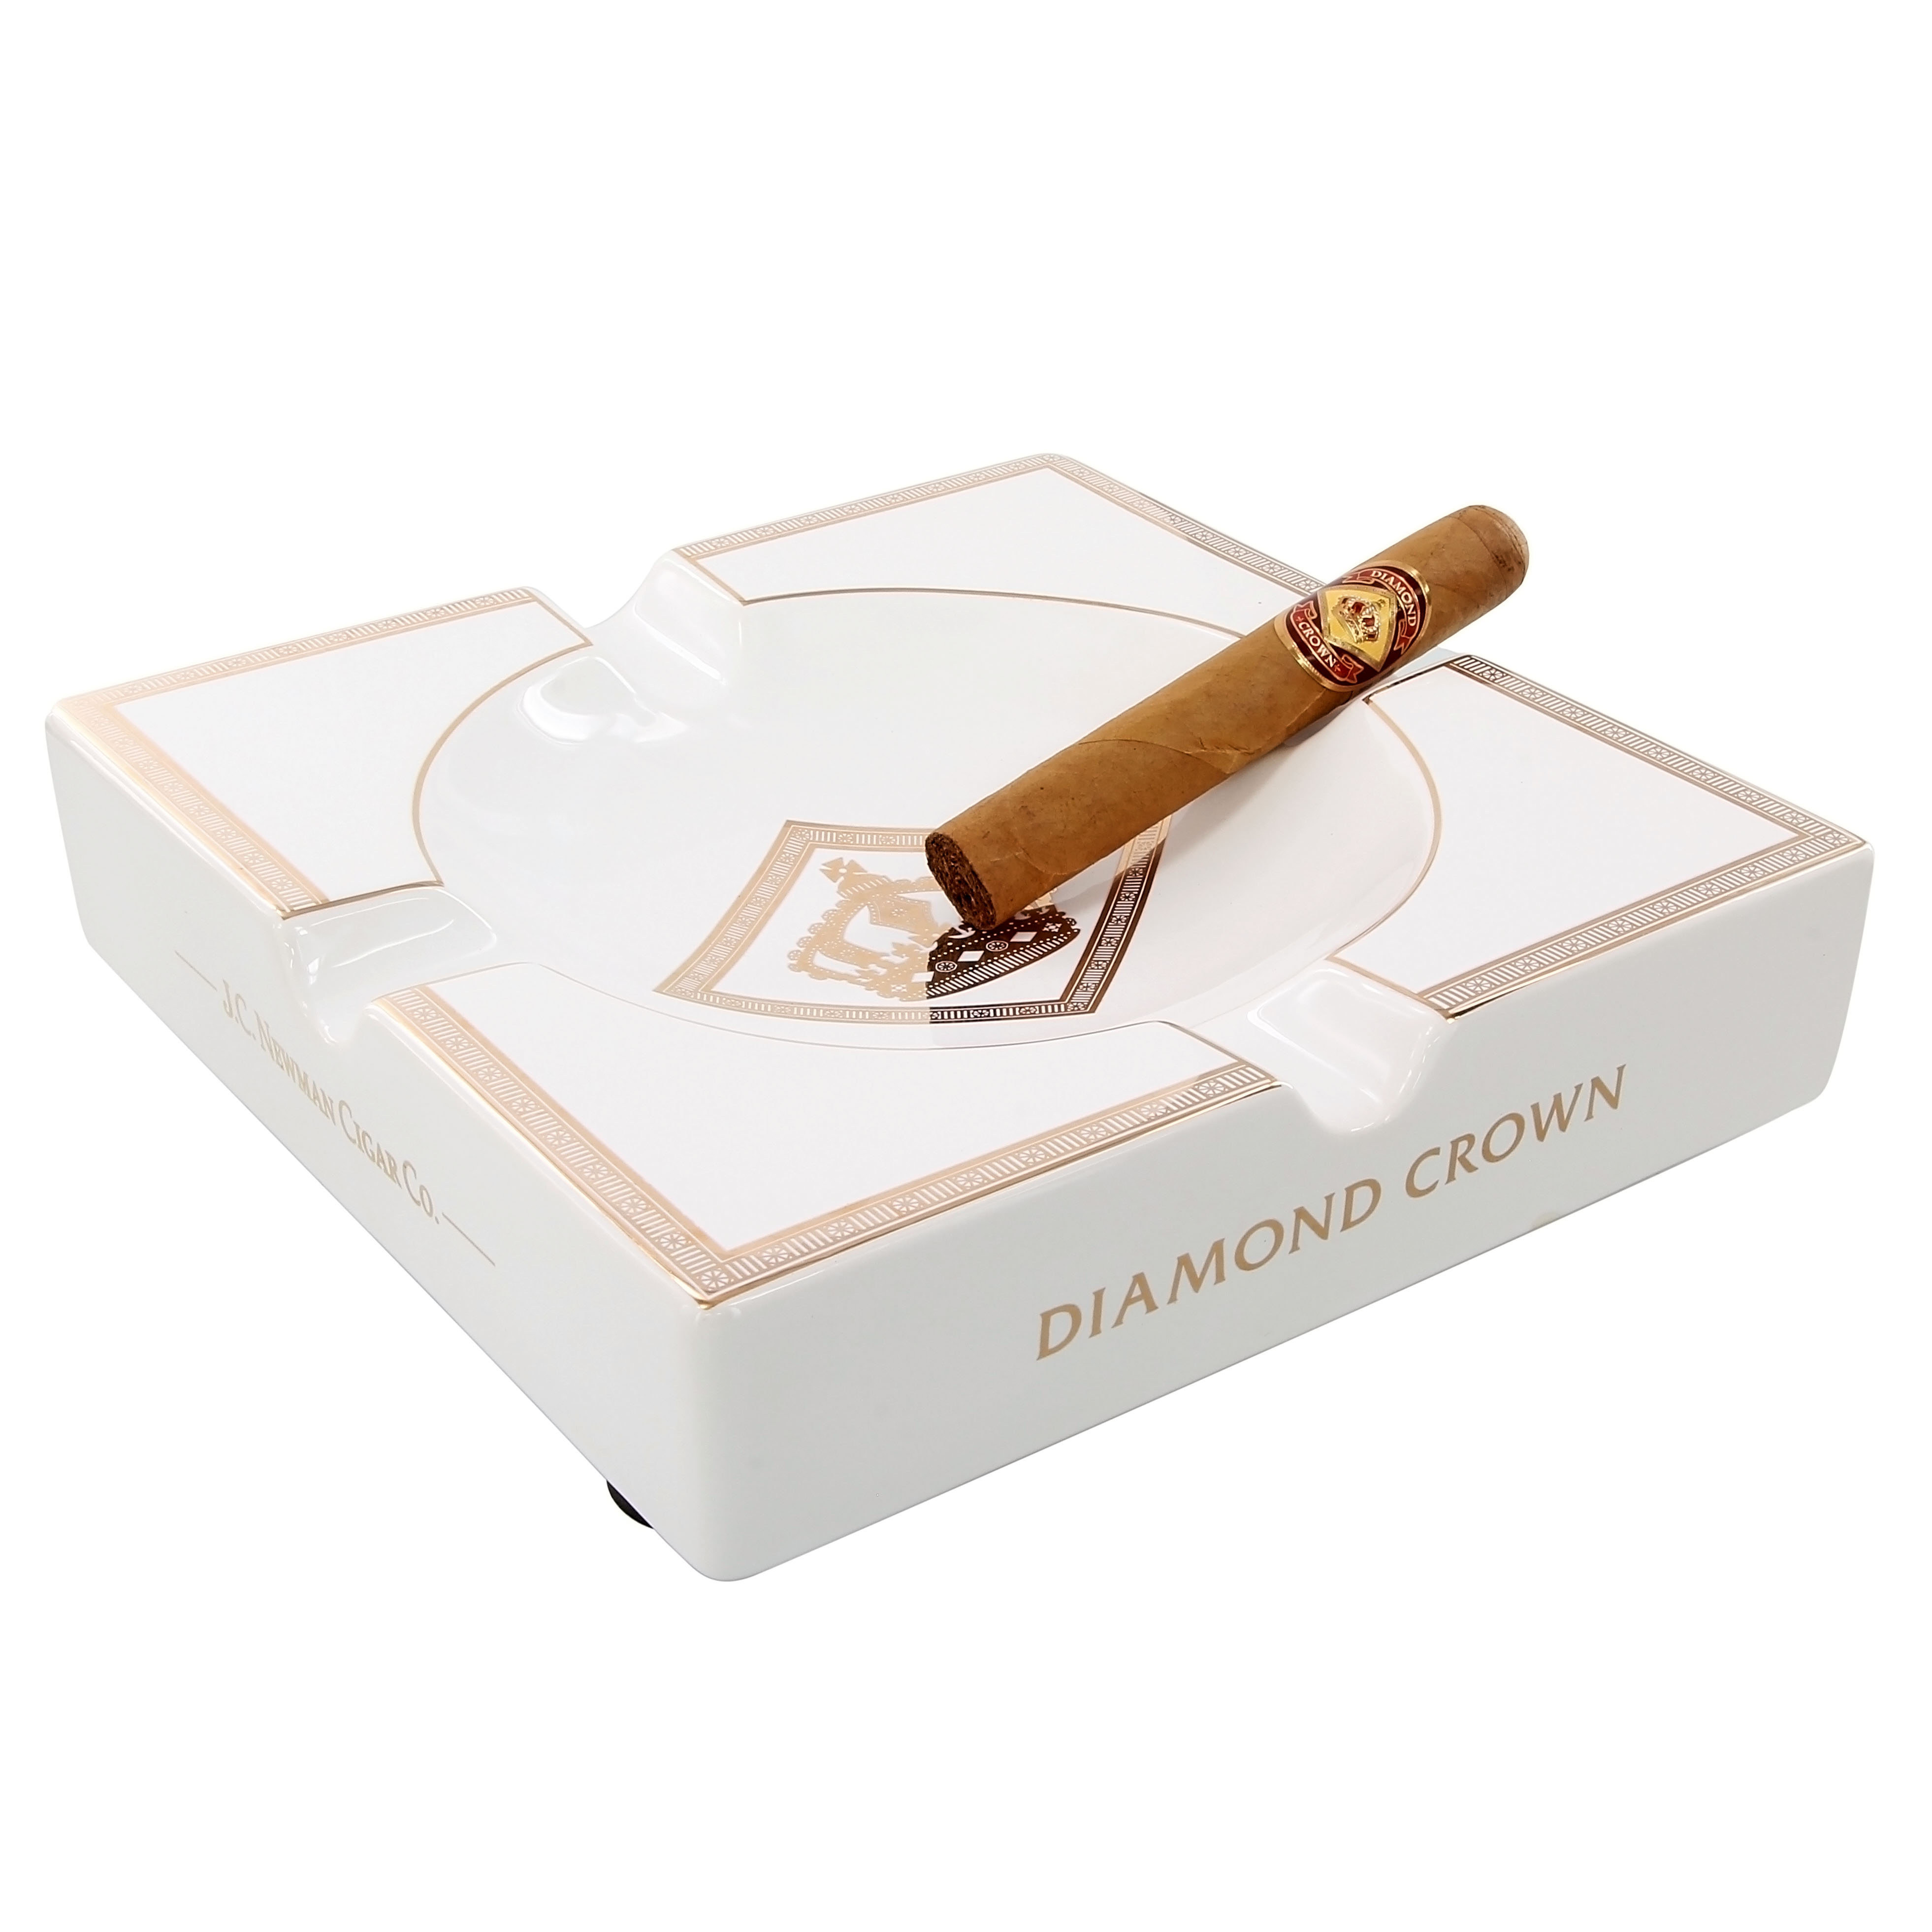 4 Cigar Rests Rare Padron Cigars Ceramic Ashtray